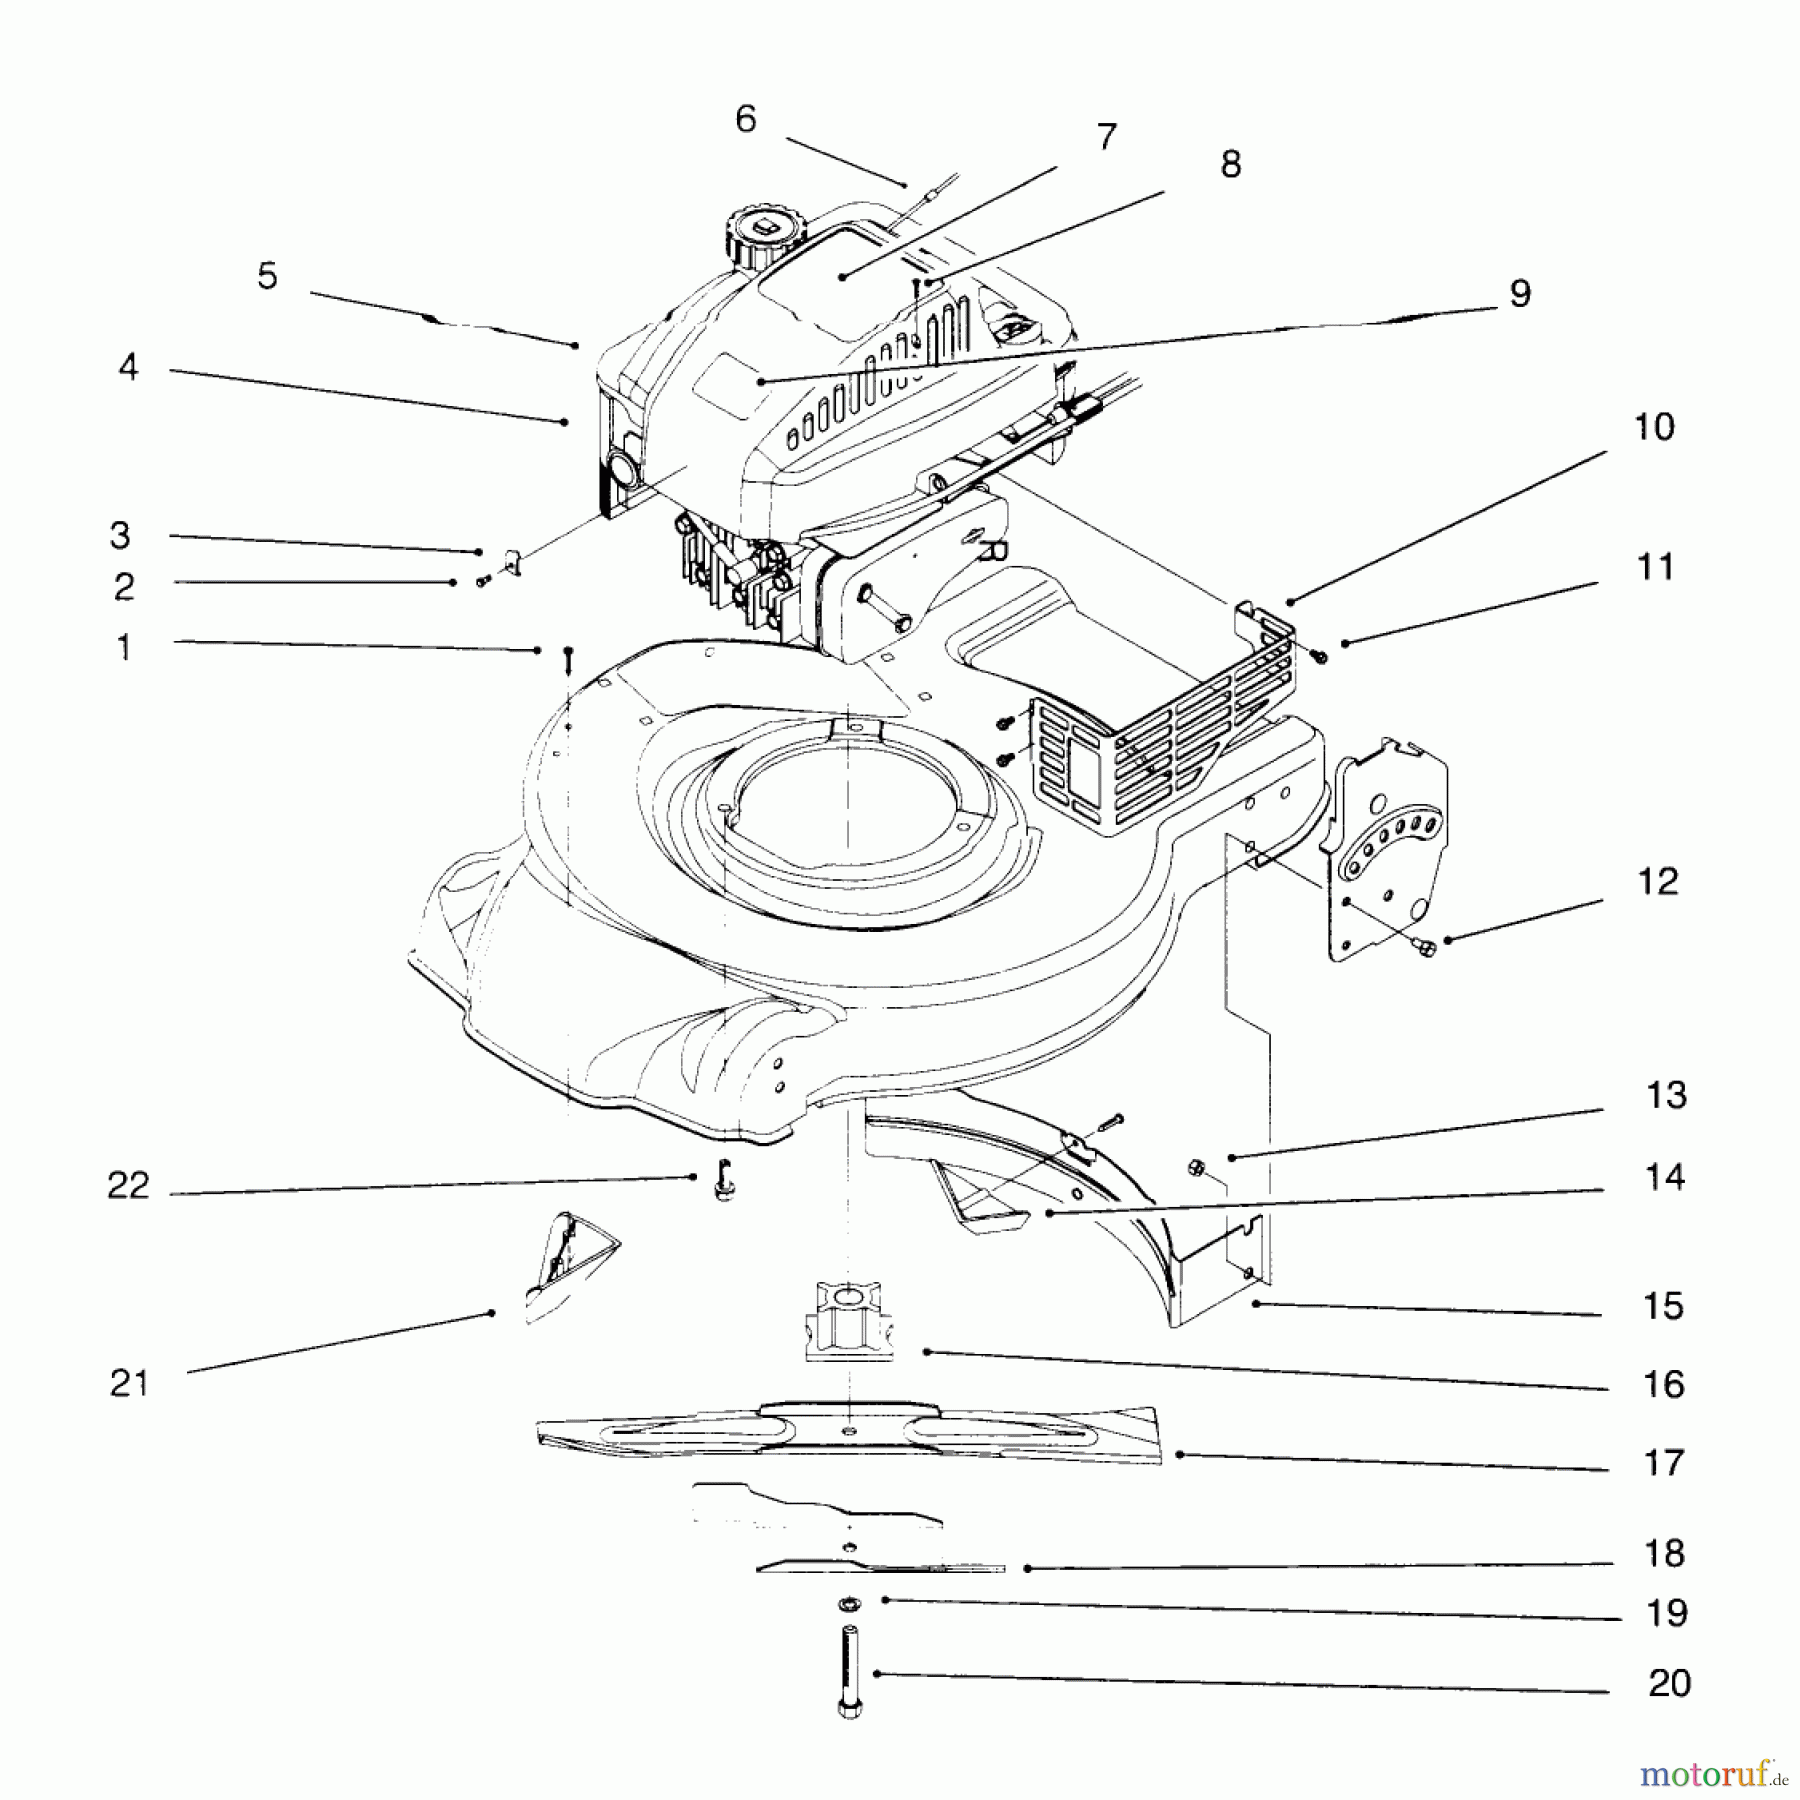  Toro Neu Mowers, Walk-Behind Seite 1 20443 - Toro Lawnmower, 1996 (6900001-6999999) ENGINE ASSEMBLY #2